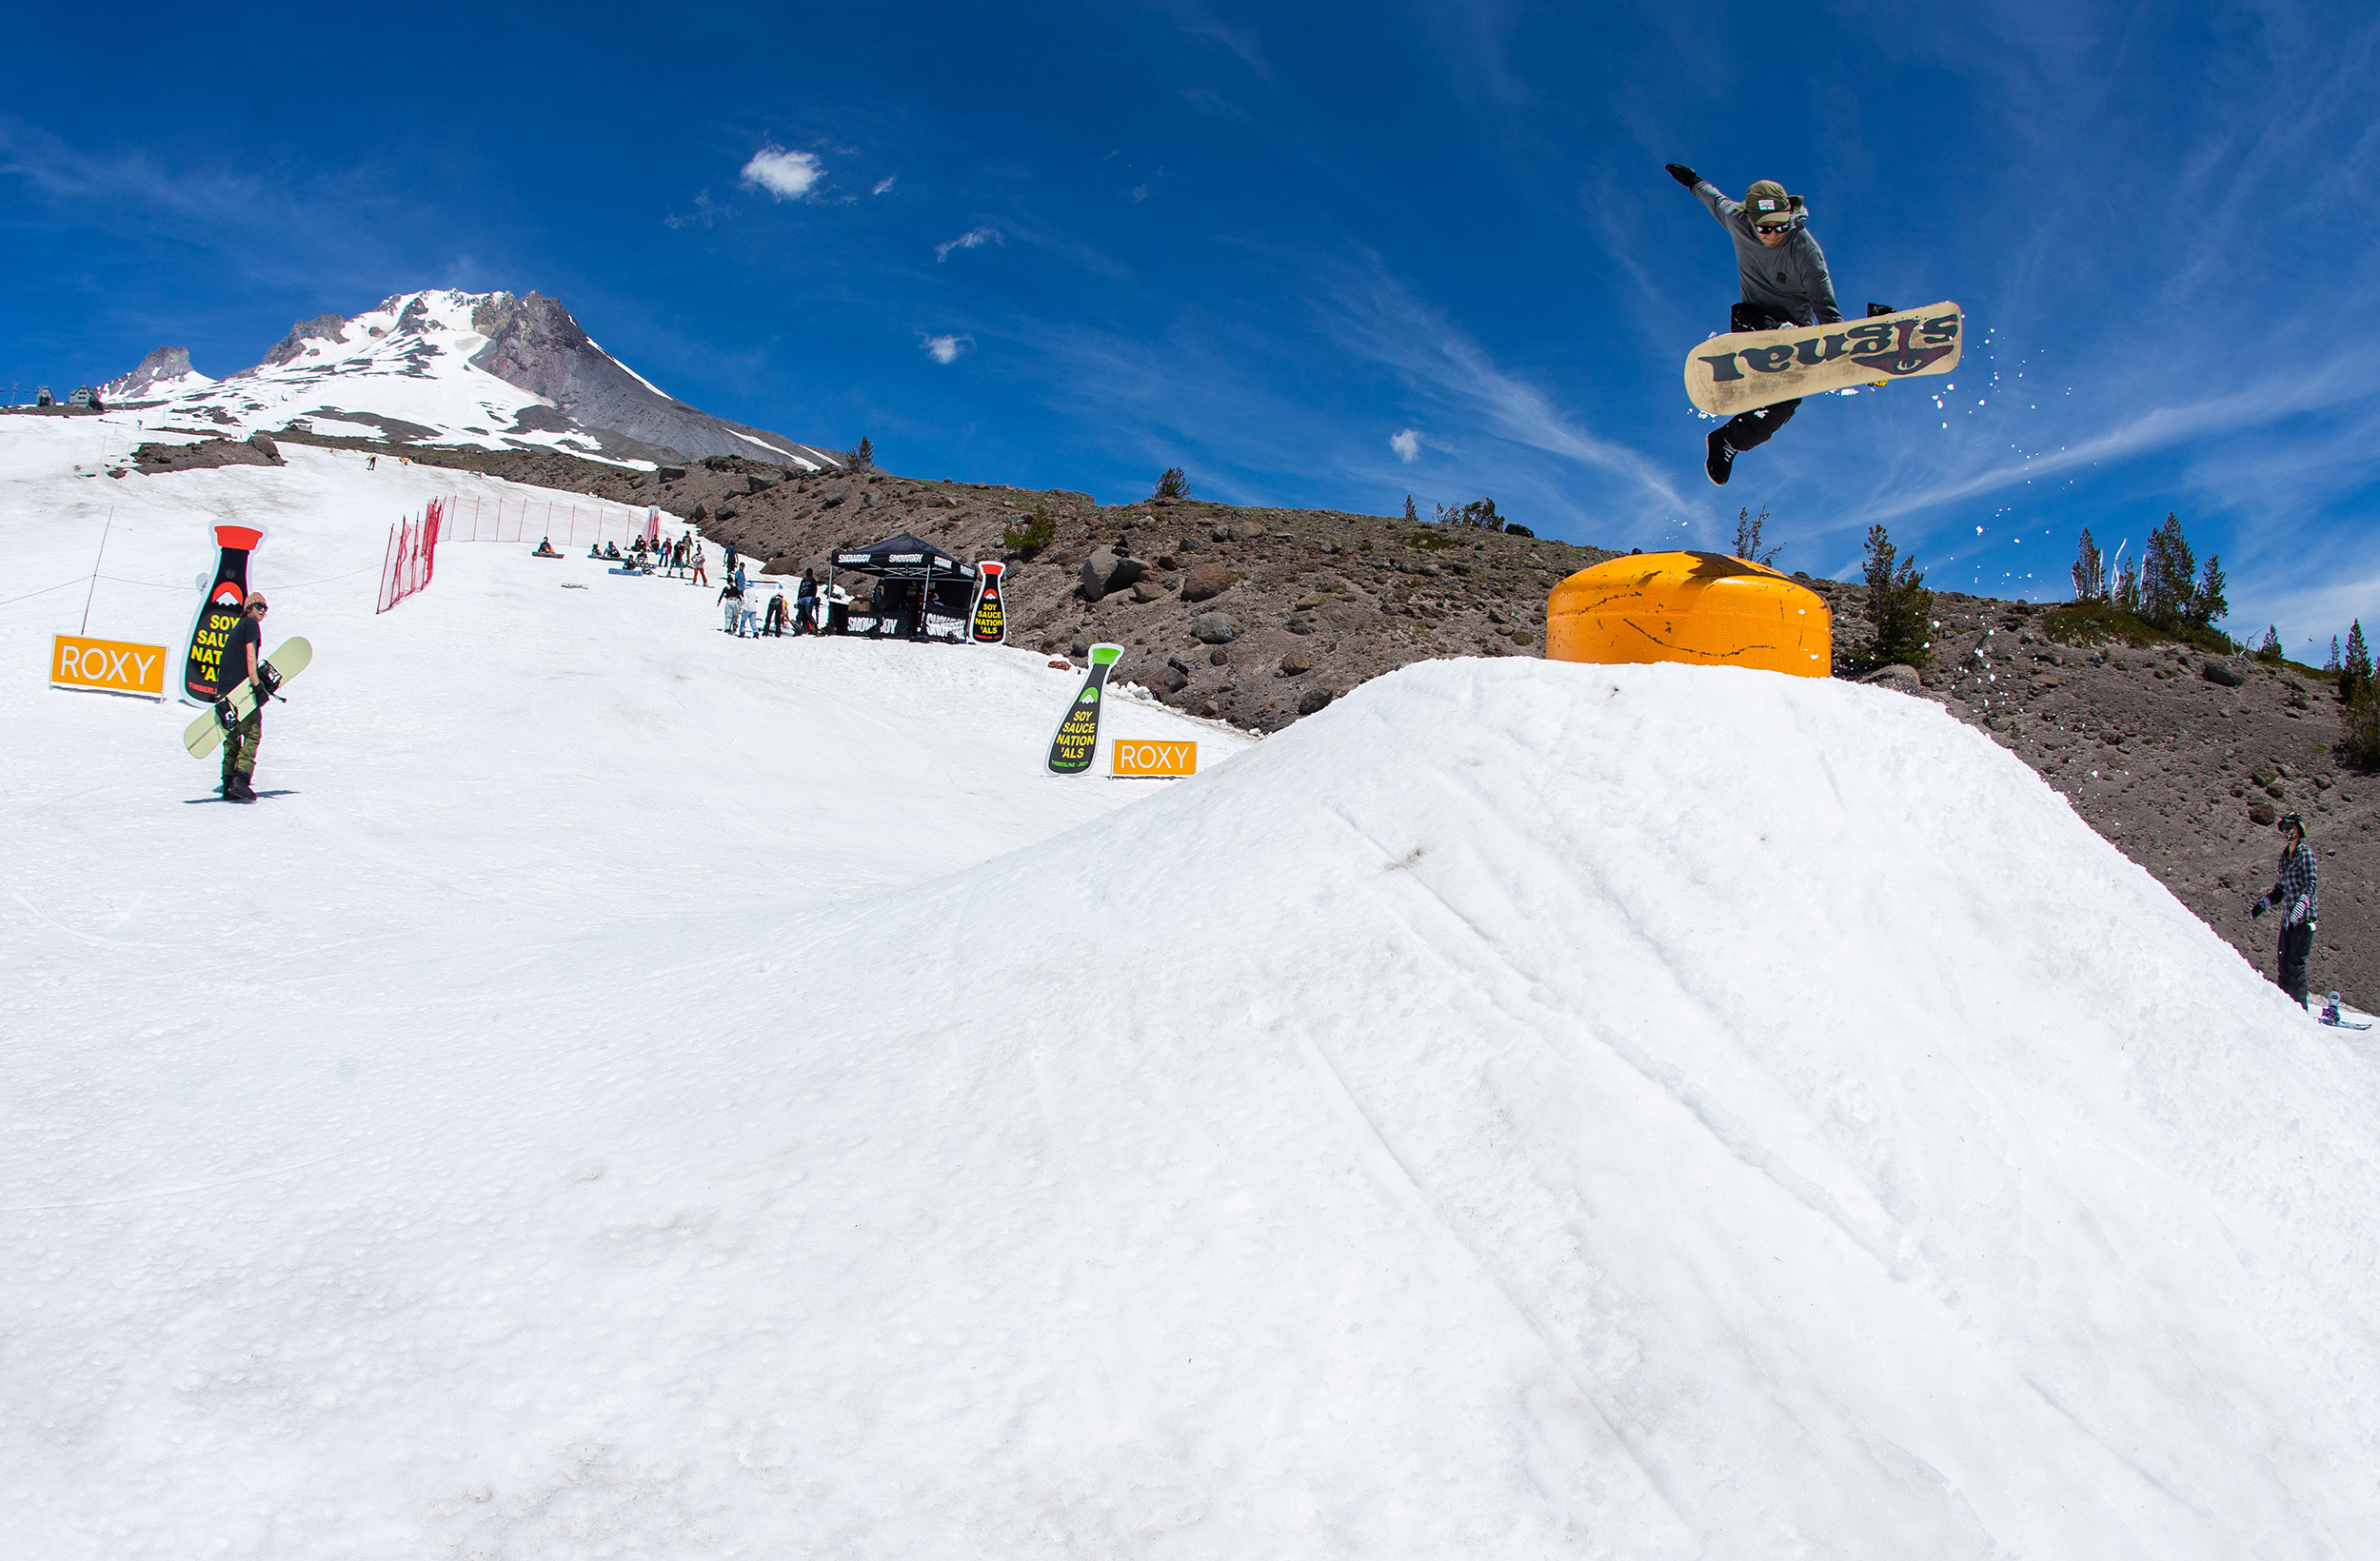 Steve Lauder bonks a bonk on a snowboard